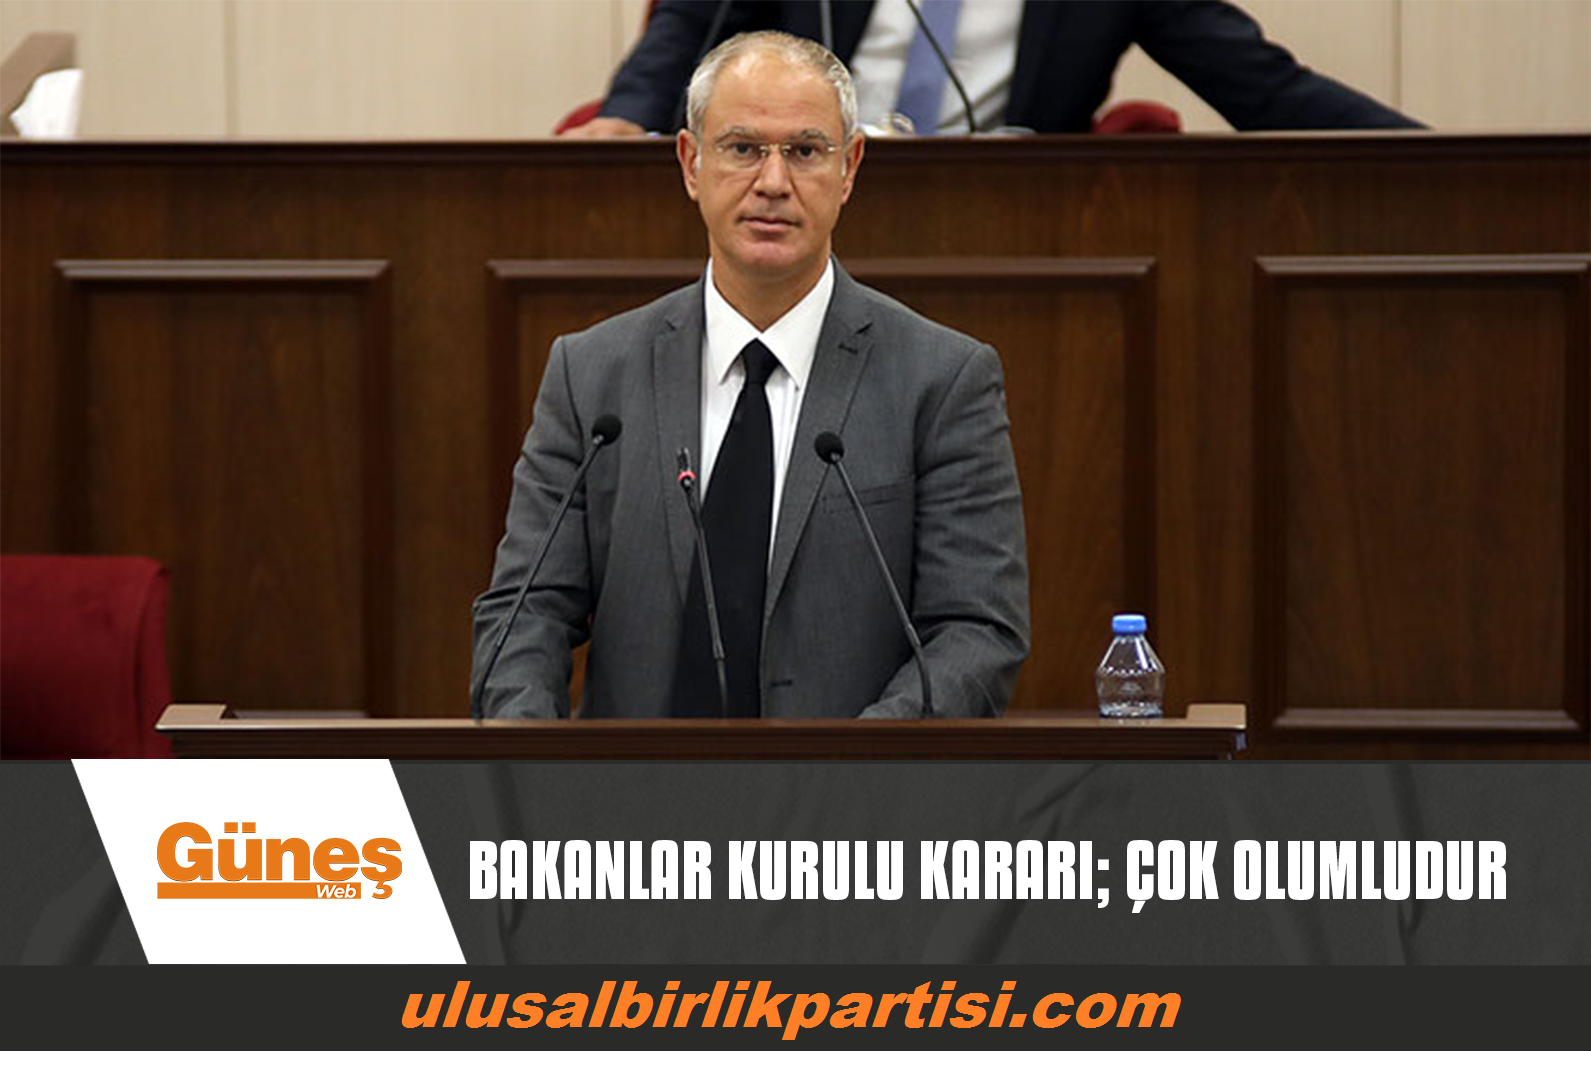 You are currently viewing BAKANLAR KURULU KARARI; ÇOK OLUMLUDUR